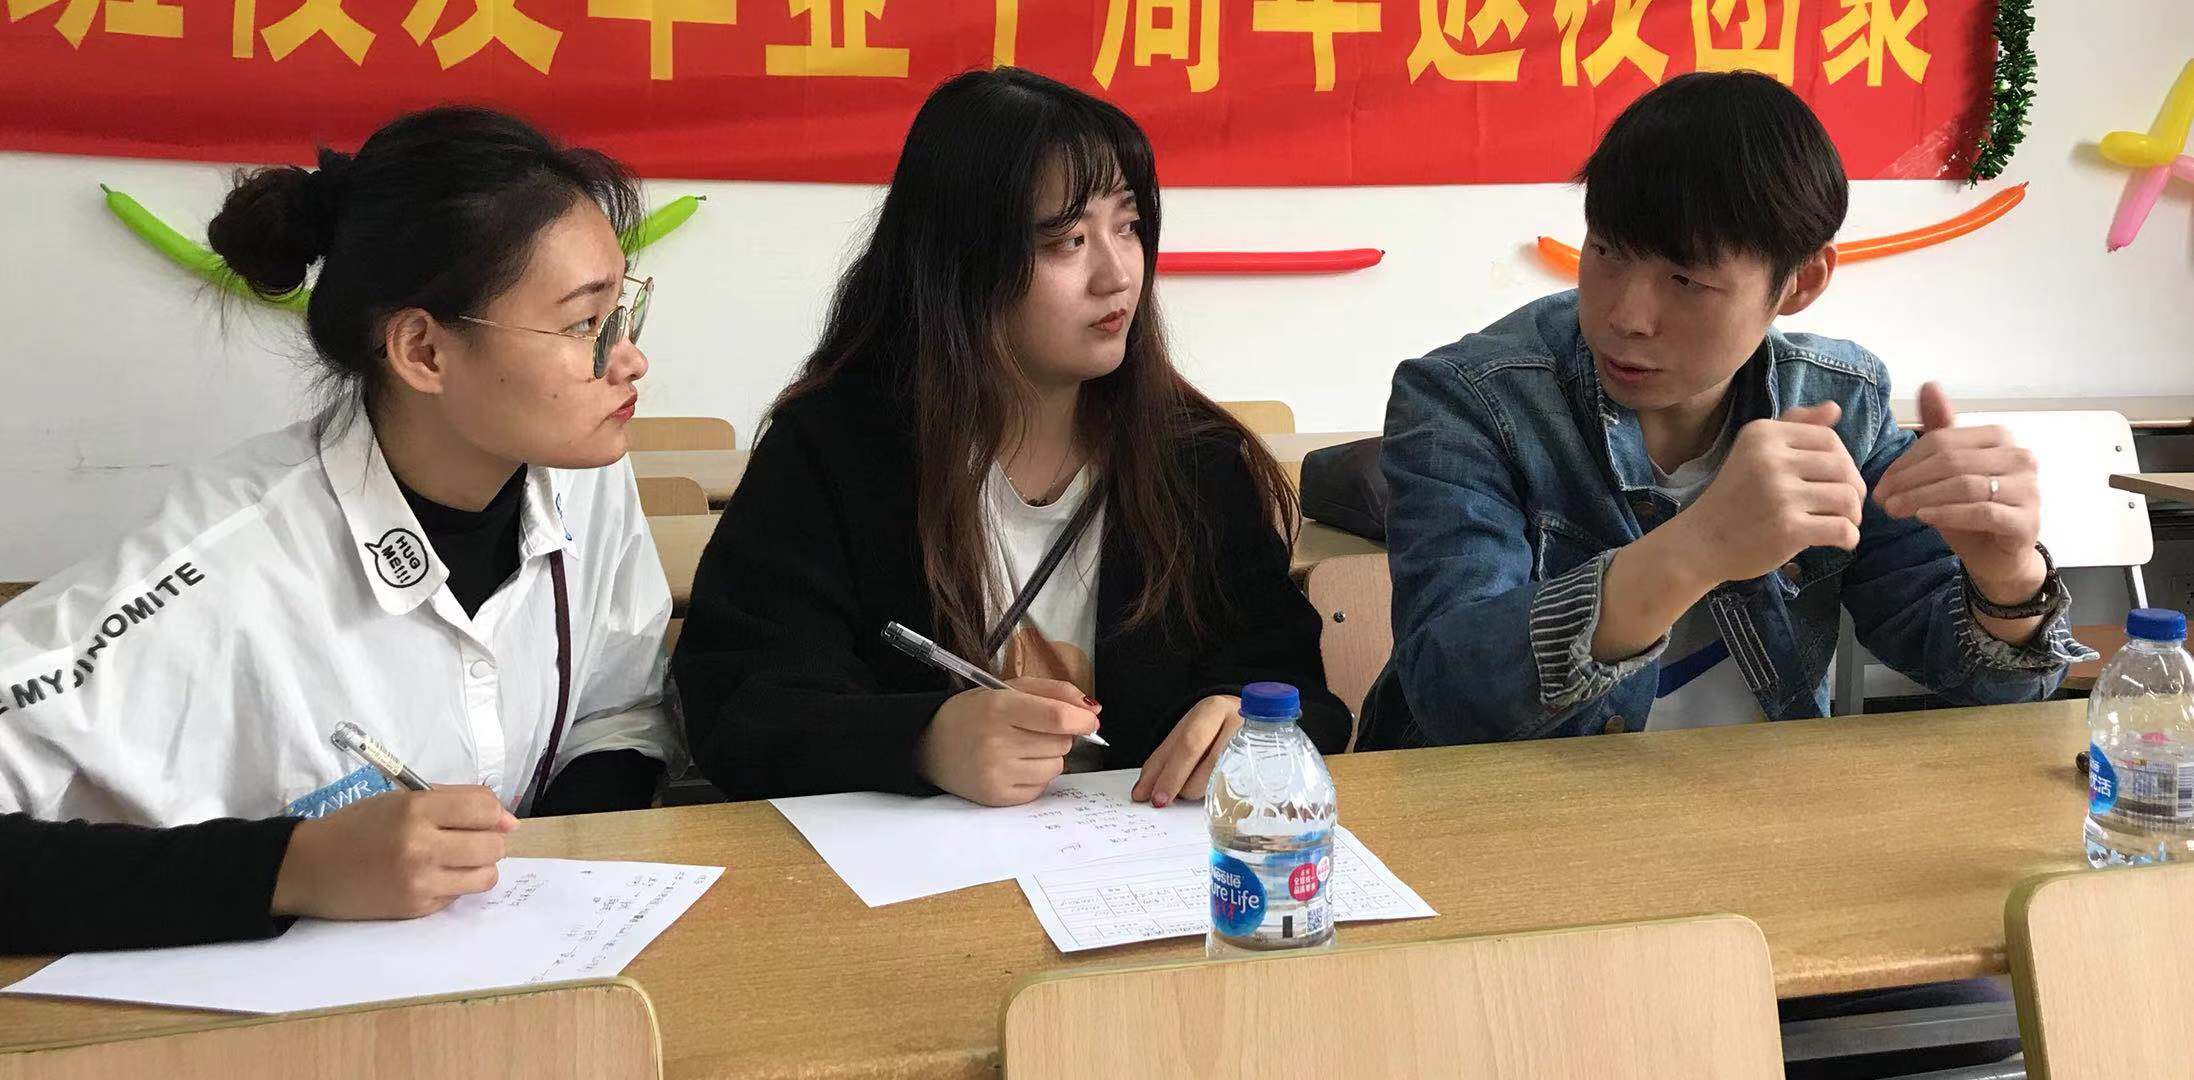 河南电视台记者采访新联学院红色青年筑梦之旅扶贫攻坚队